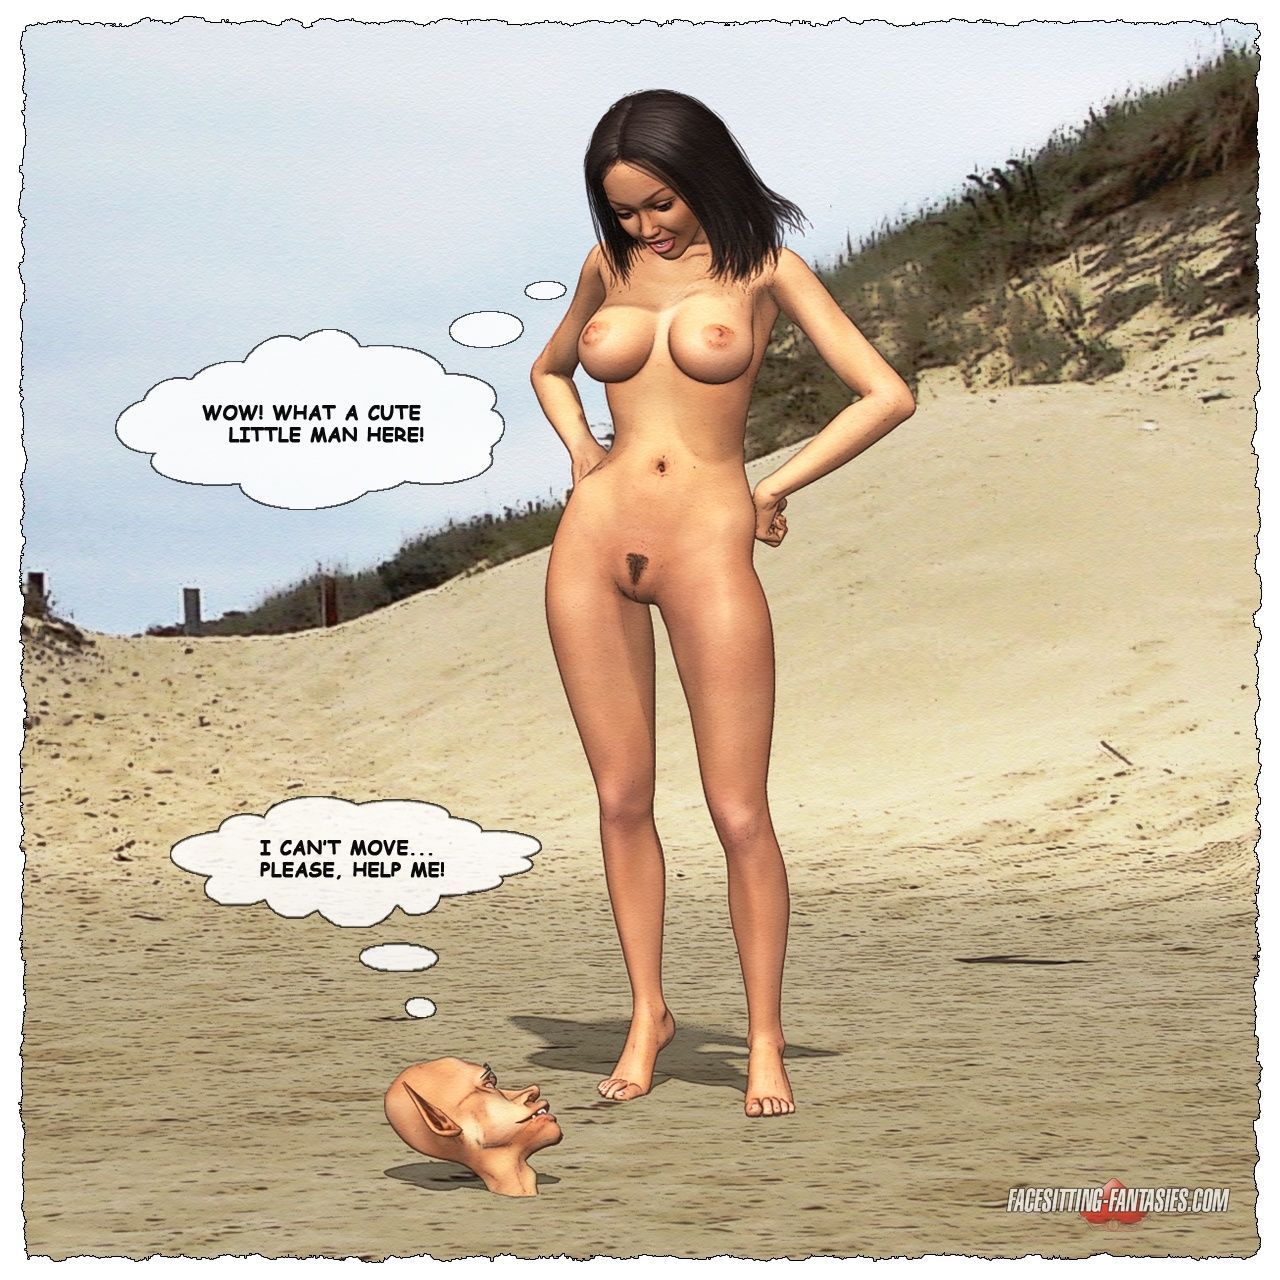 एक सुंदर नग्न लड़की और एक बौना दफन में रेत